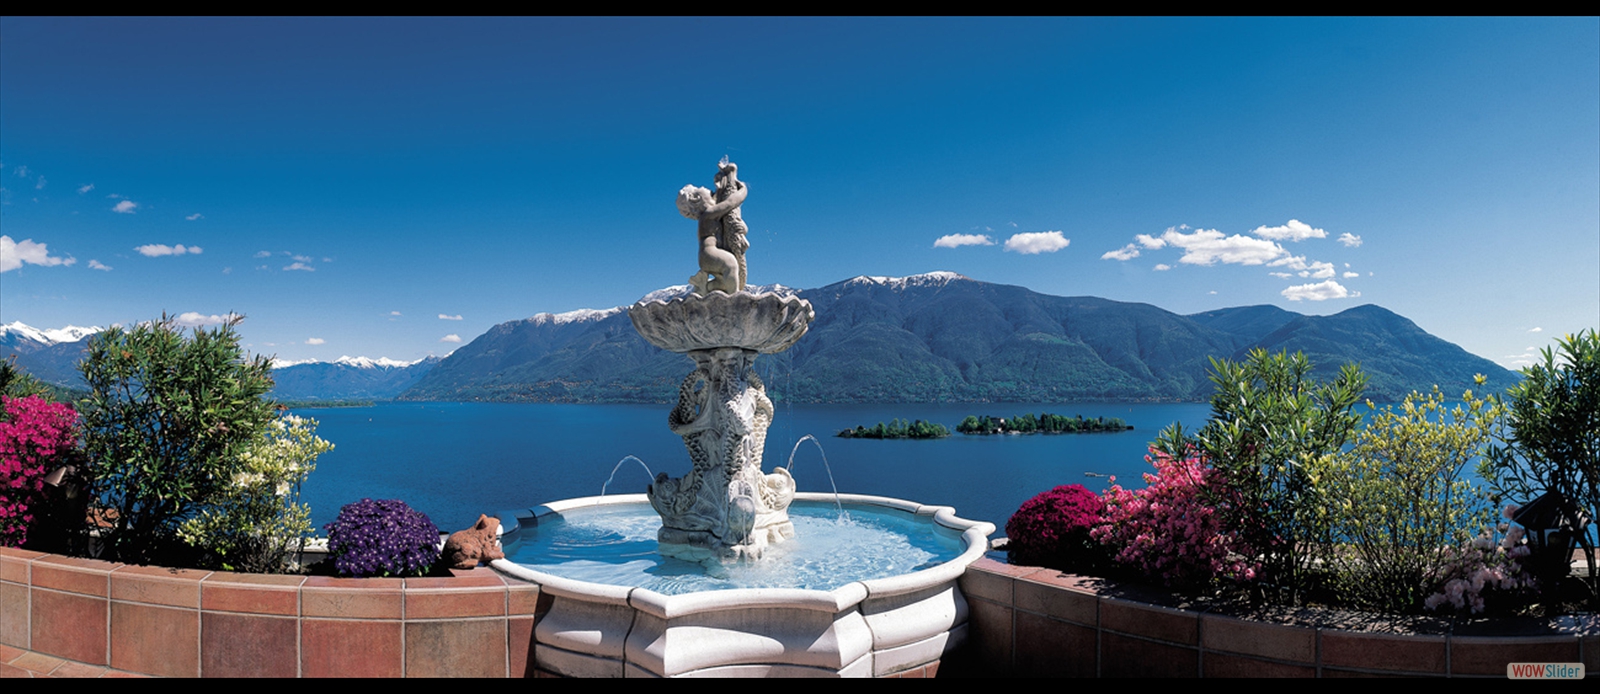 Lago de Como (Lombardia - Itália)